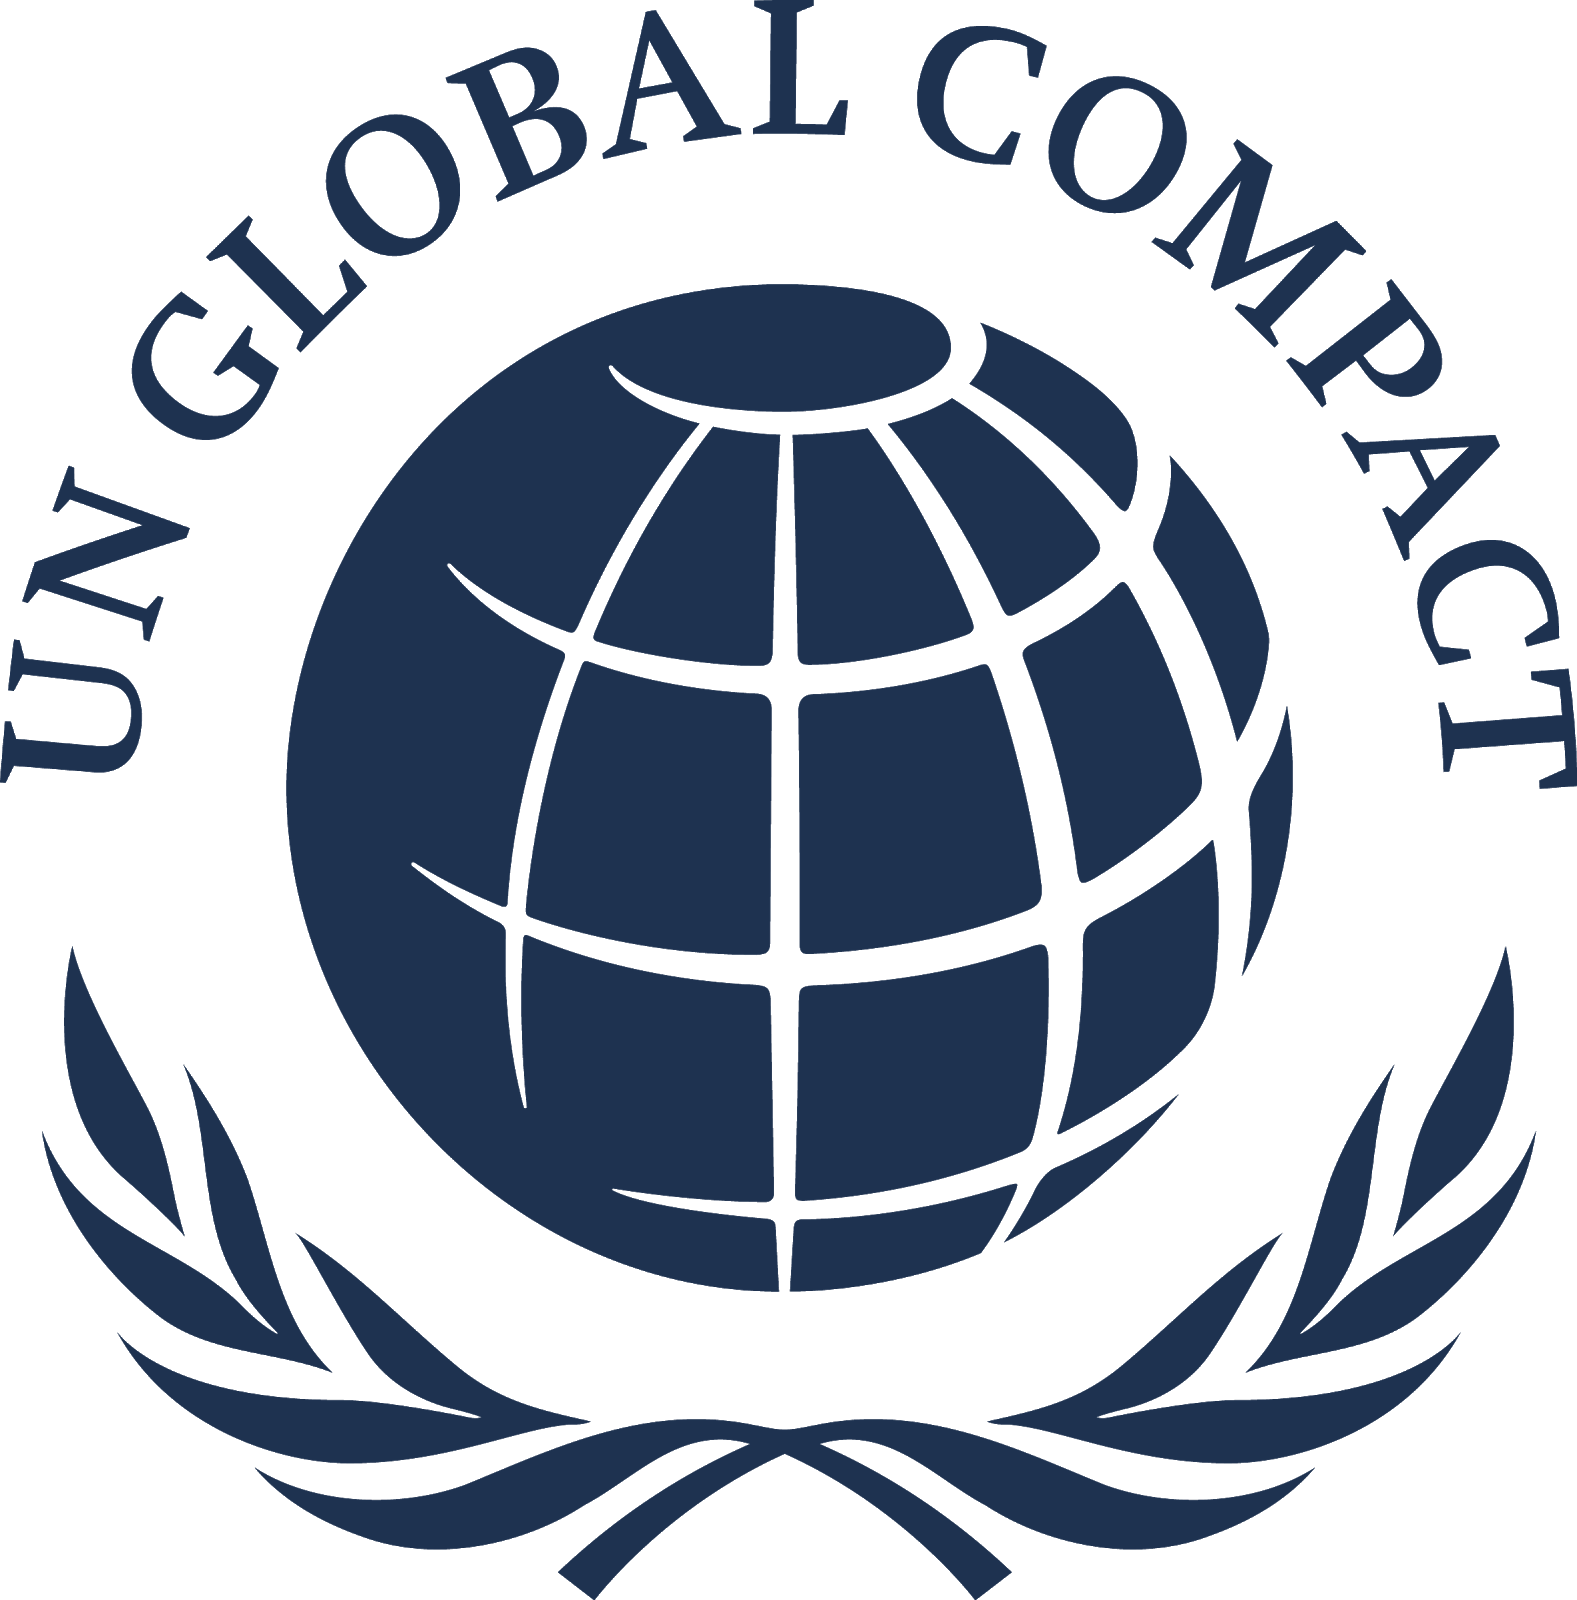 UNODC and the UN Glo